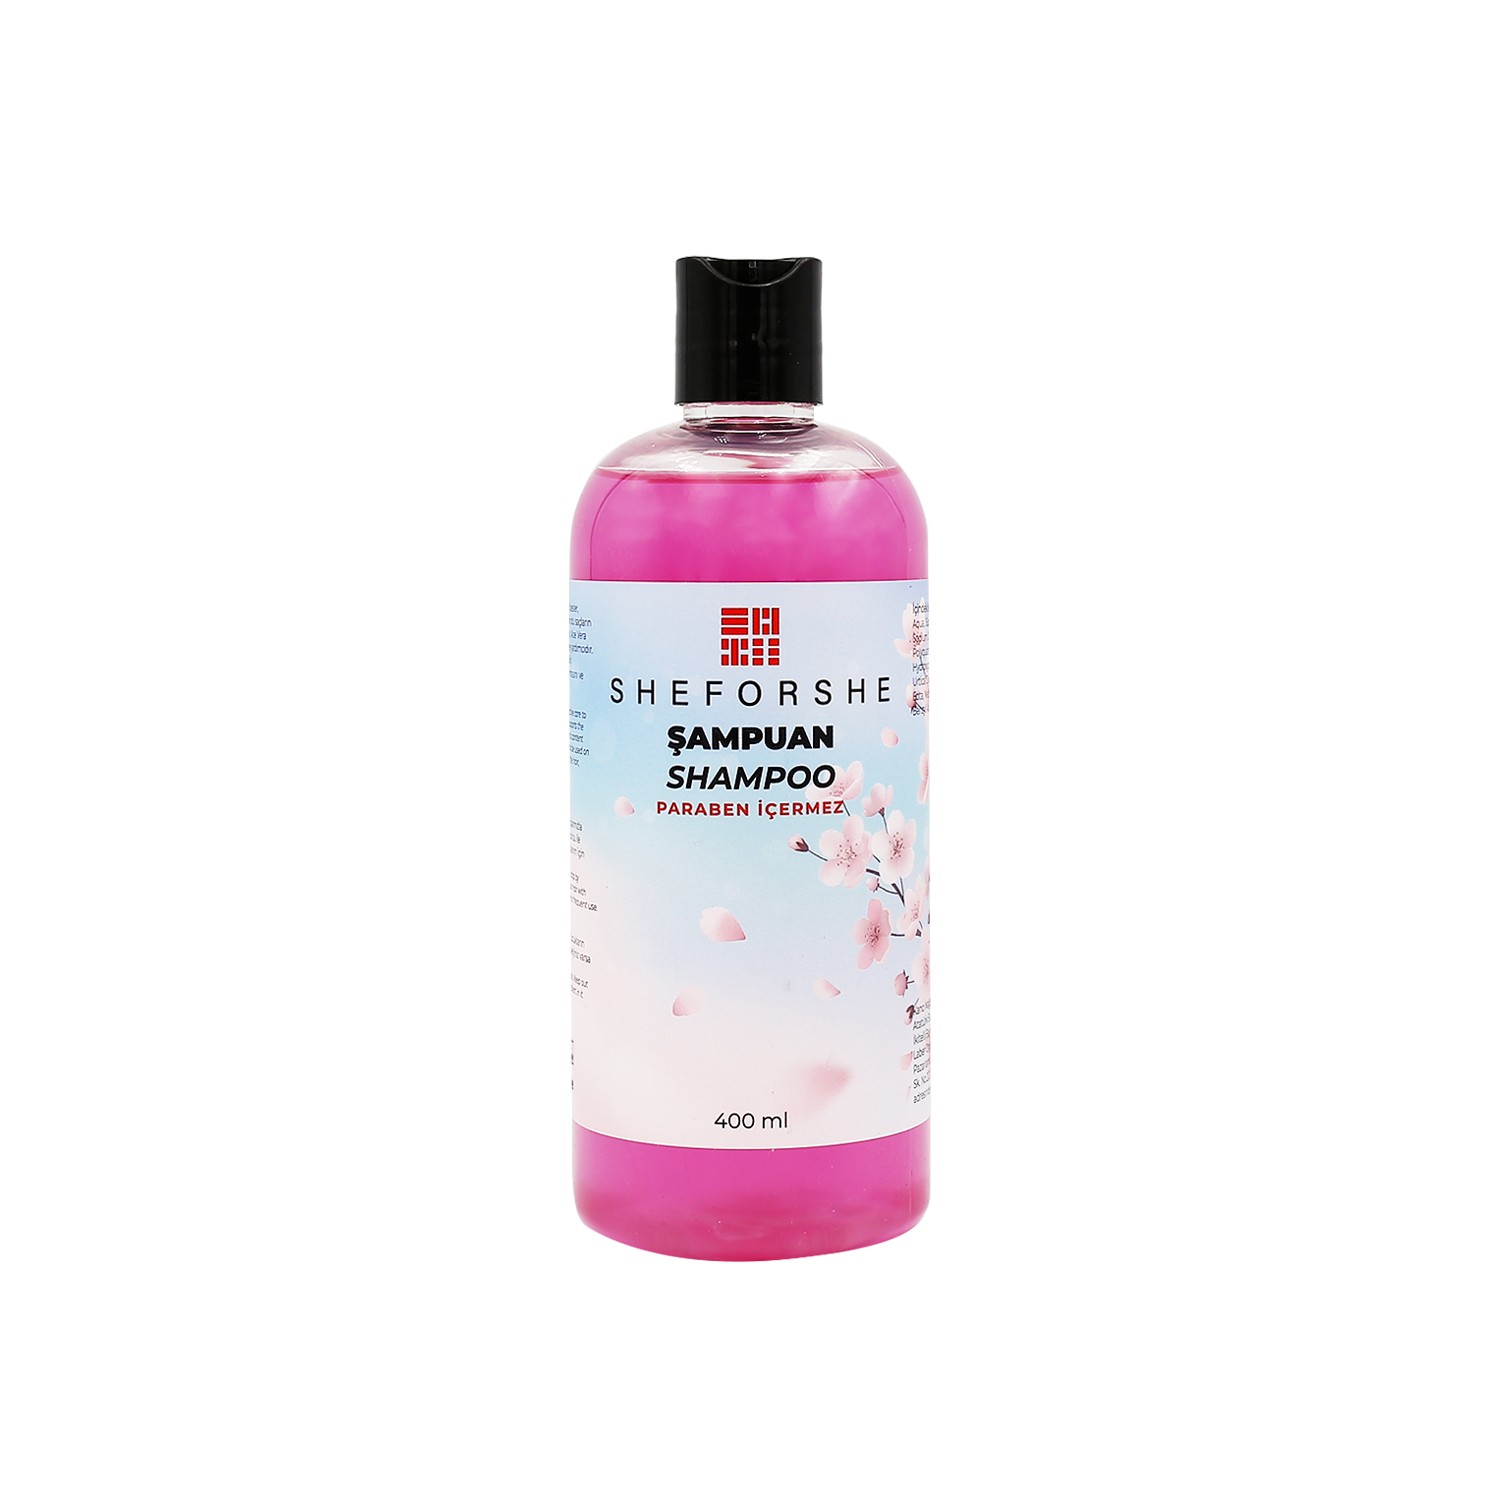 Sheforshe Sakura Şampuan 400ml